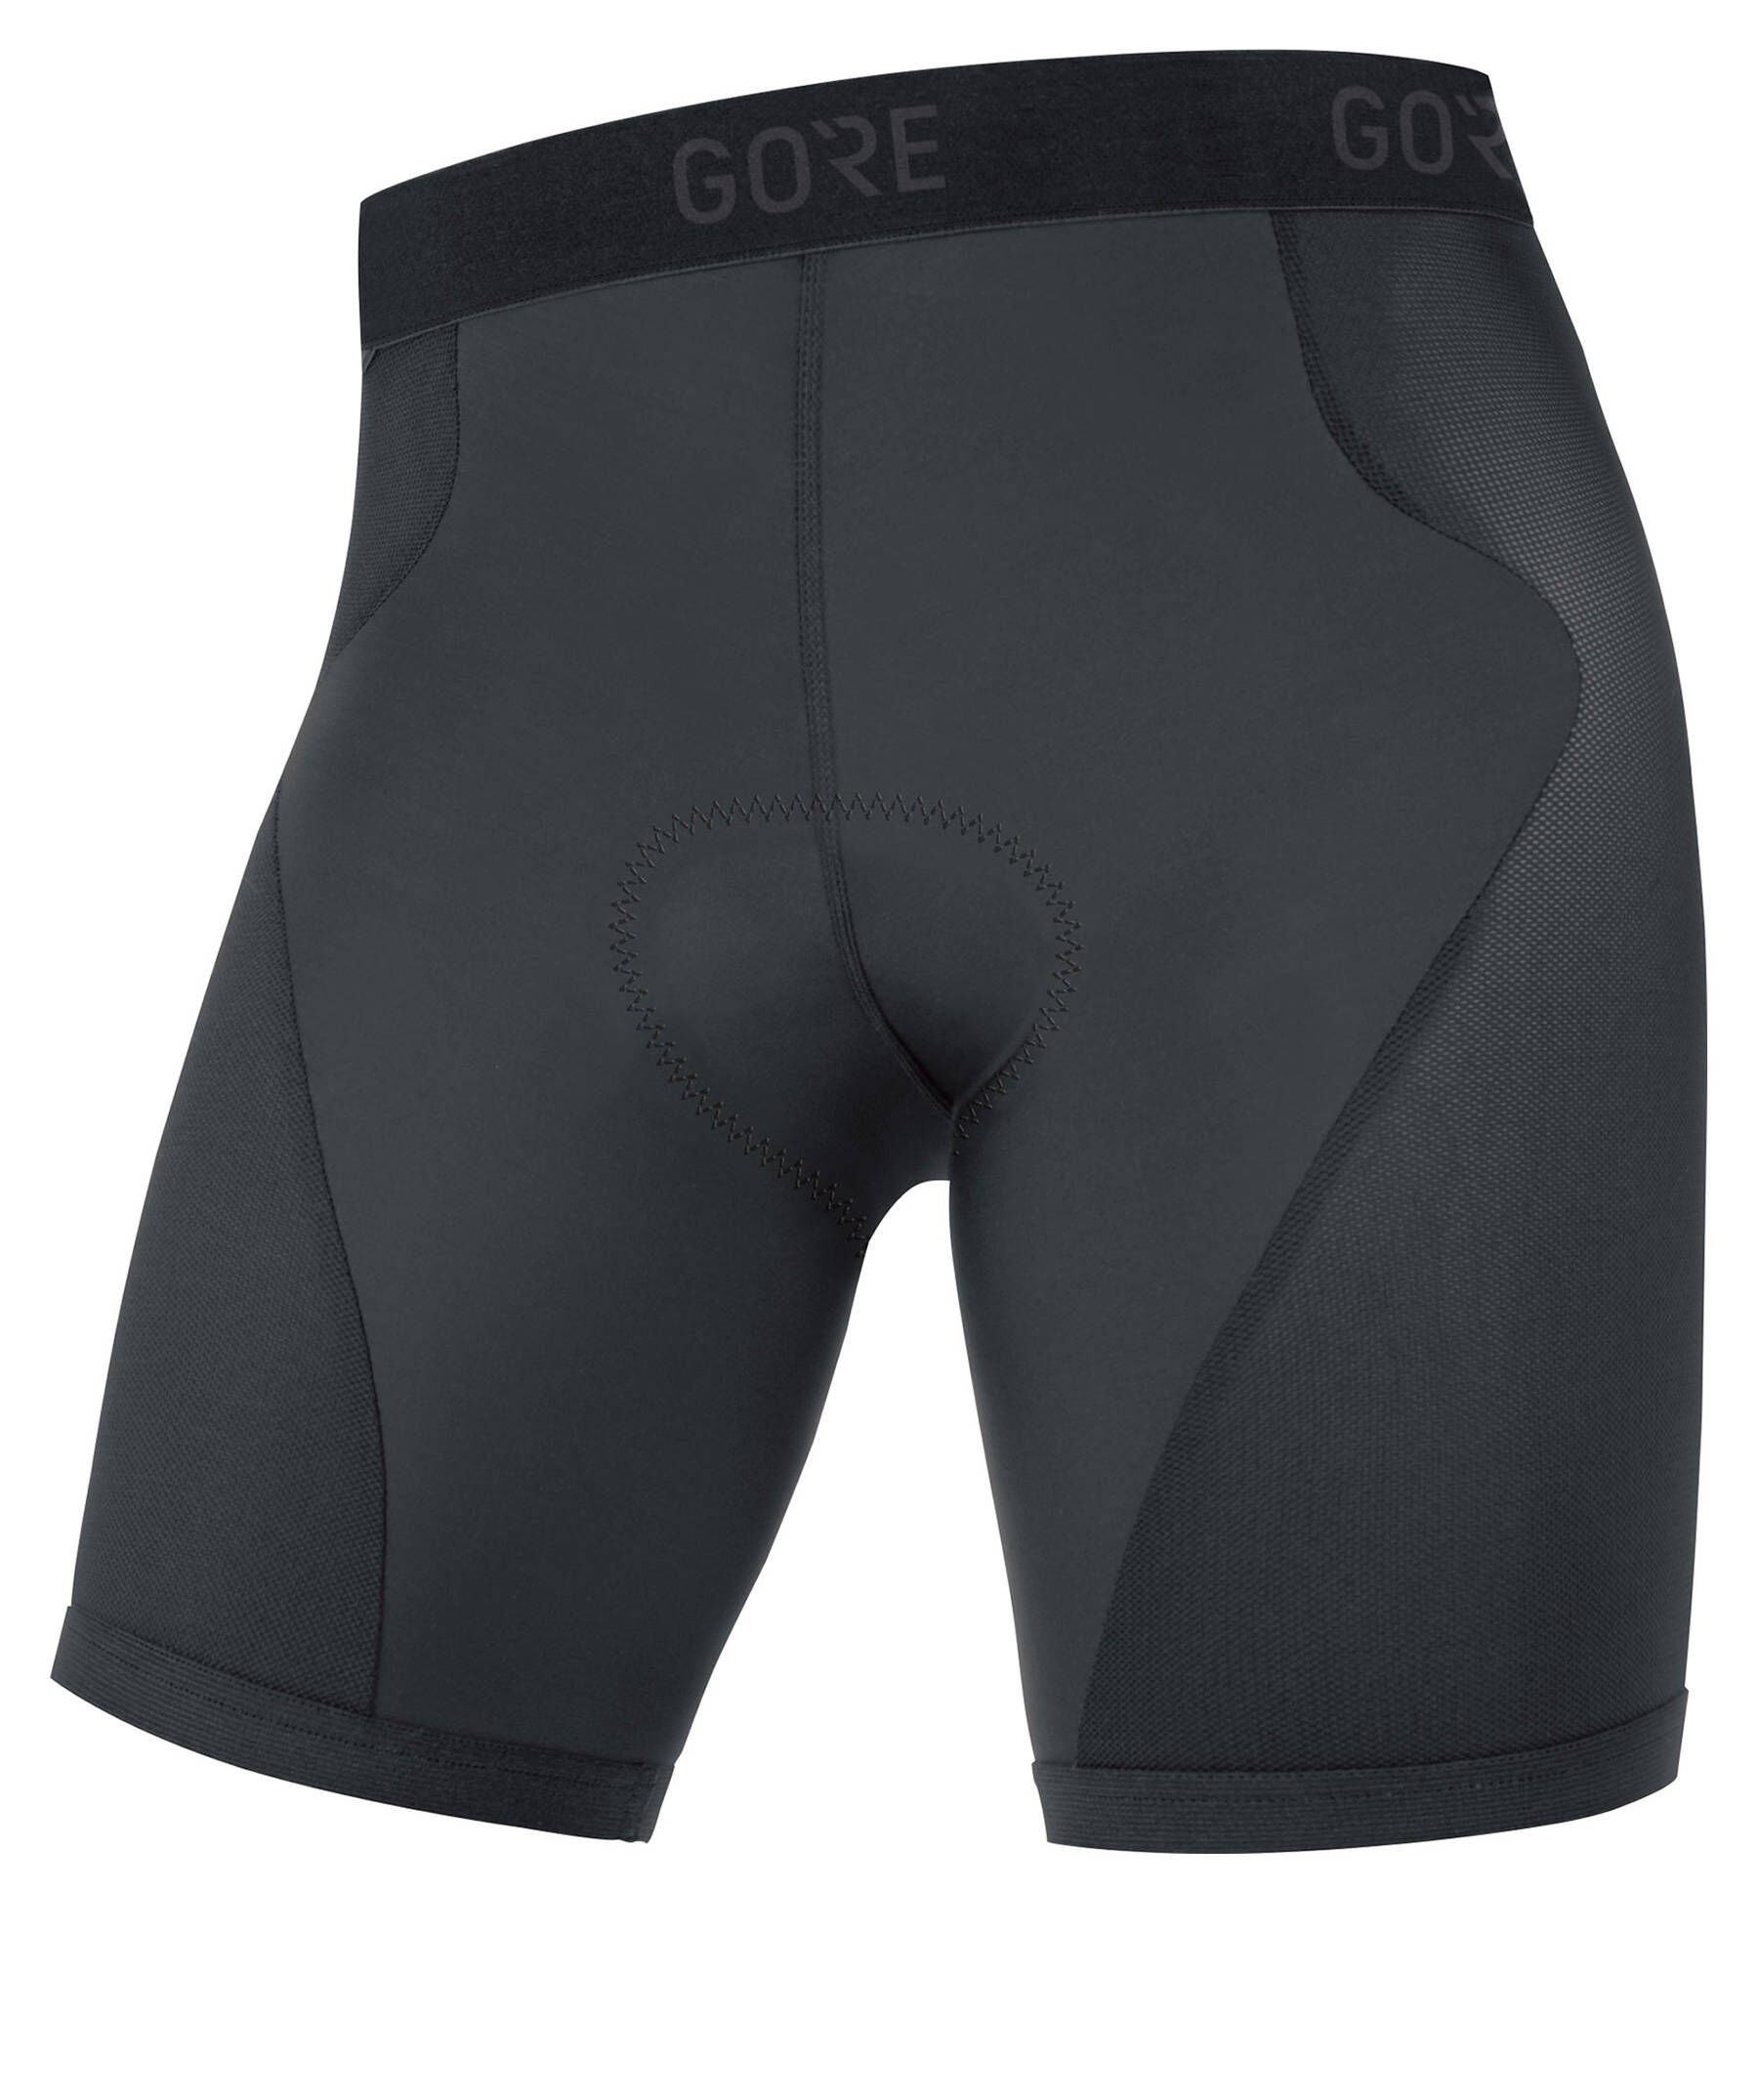 Rad-Unterhose BLACK TIGHTS Funktionsunterhose C3 Herren Wear (1-St) GORE®